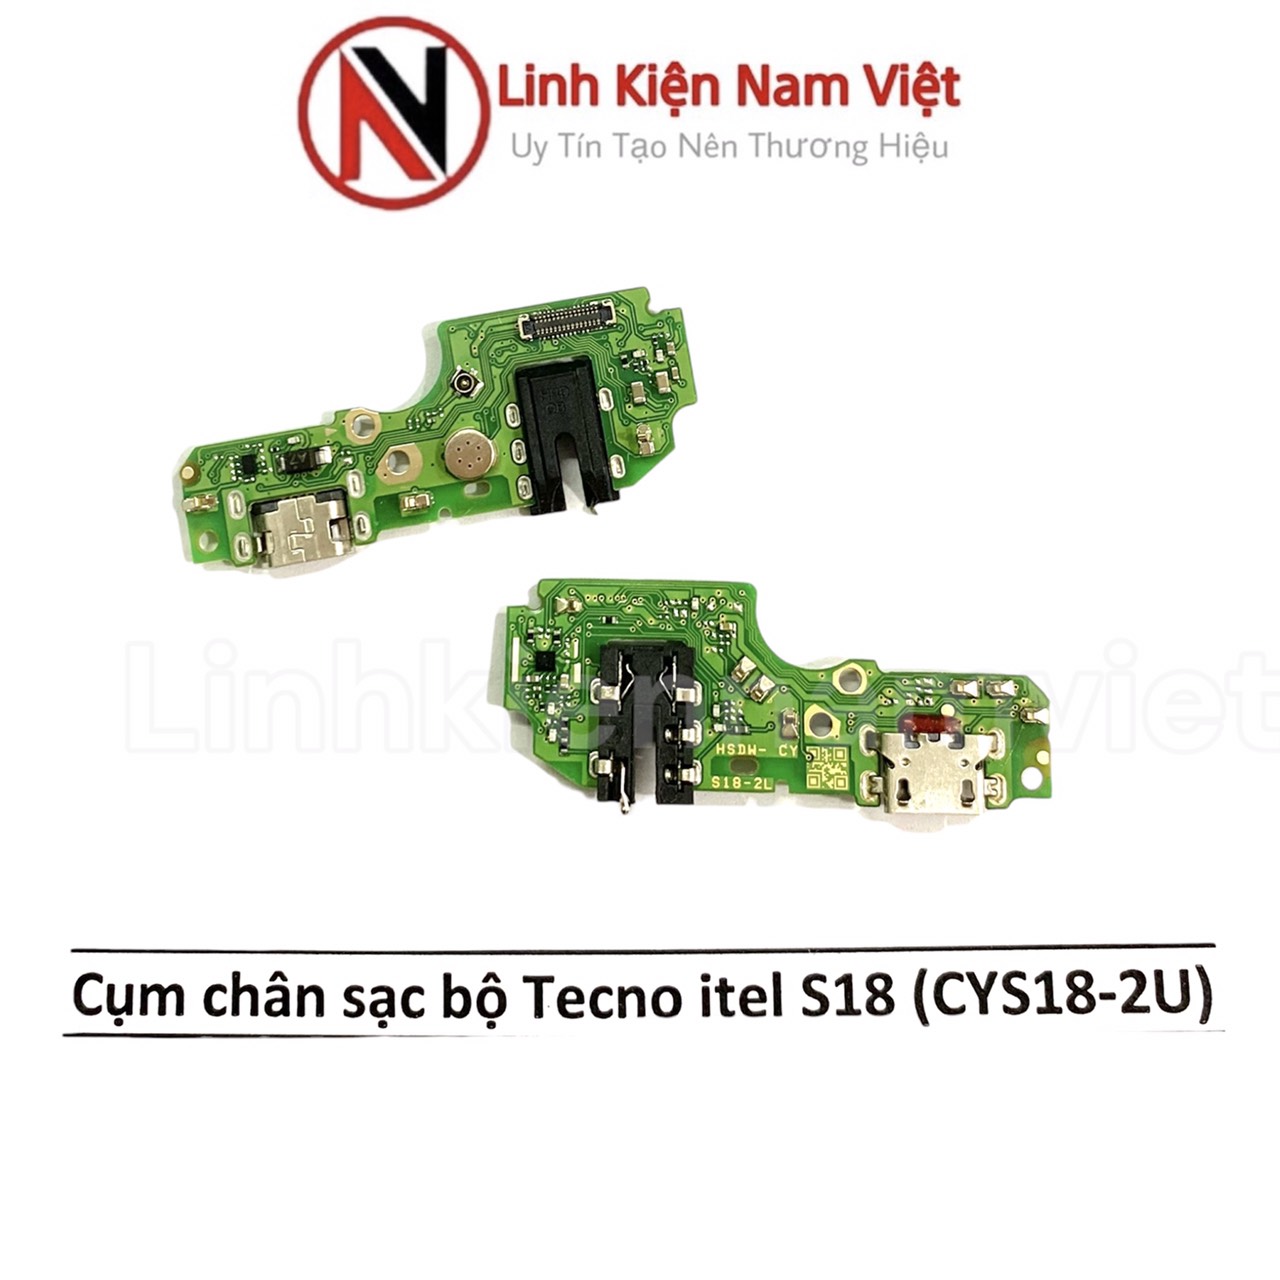 Cụm chân sạc bộ Tecno Itel S18 ( CYS18-2U )